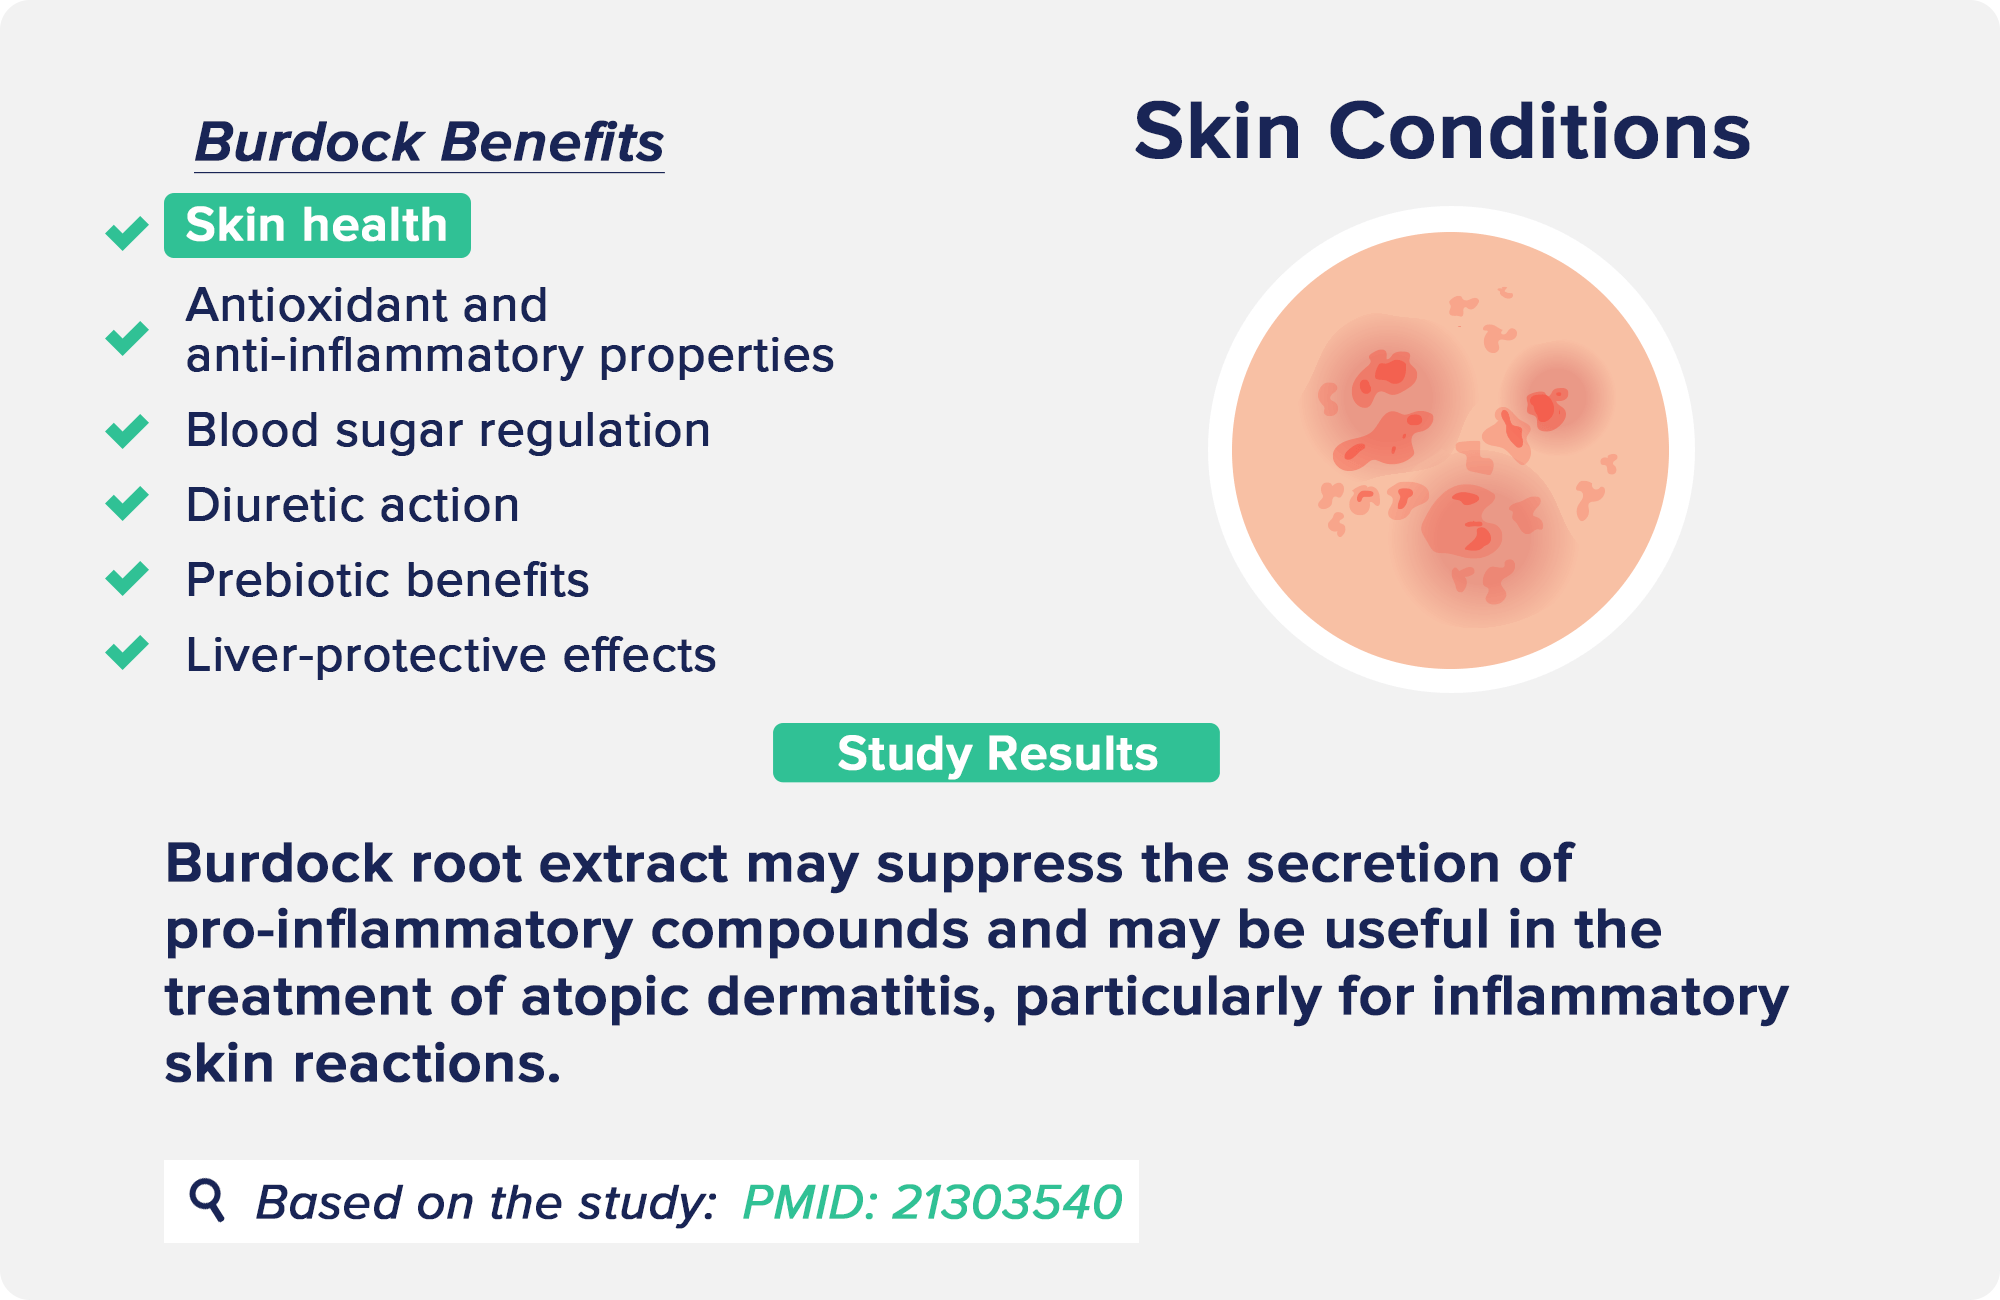 burdock benefits: Skin Conditions